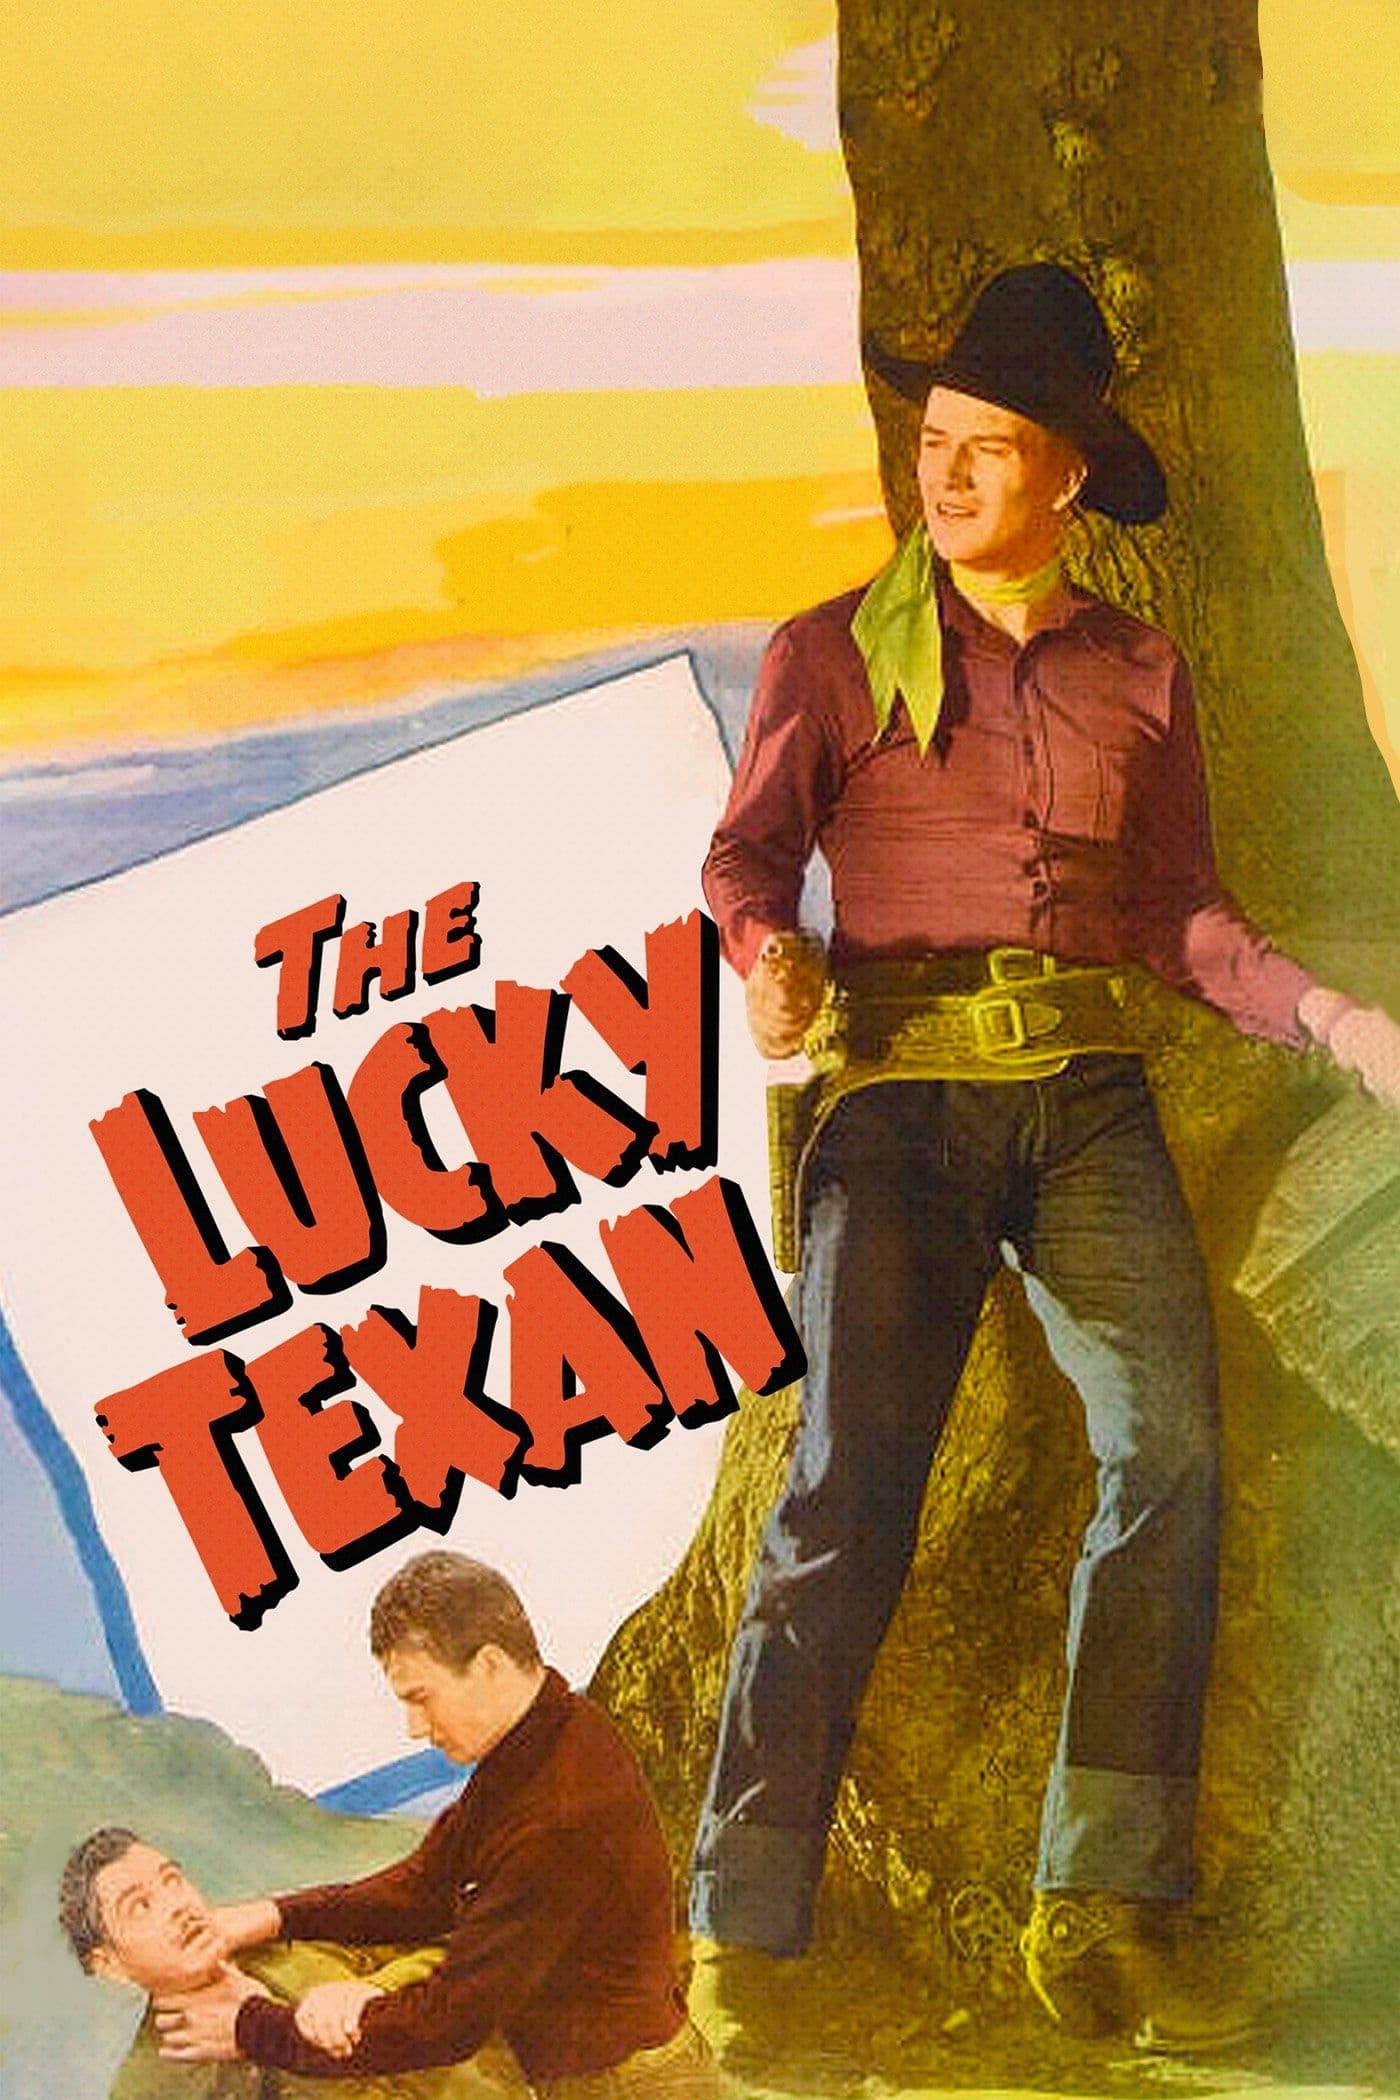 The Lucky Texan poster